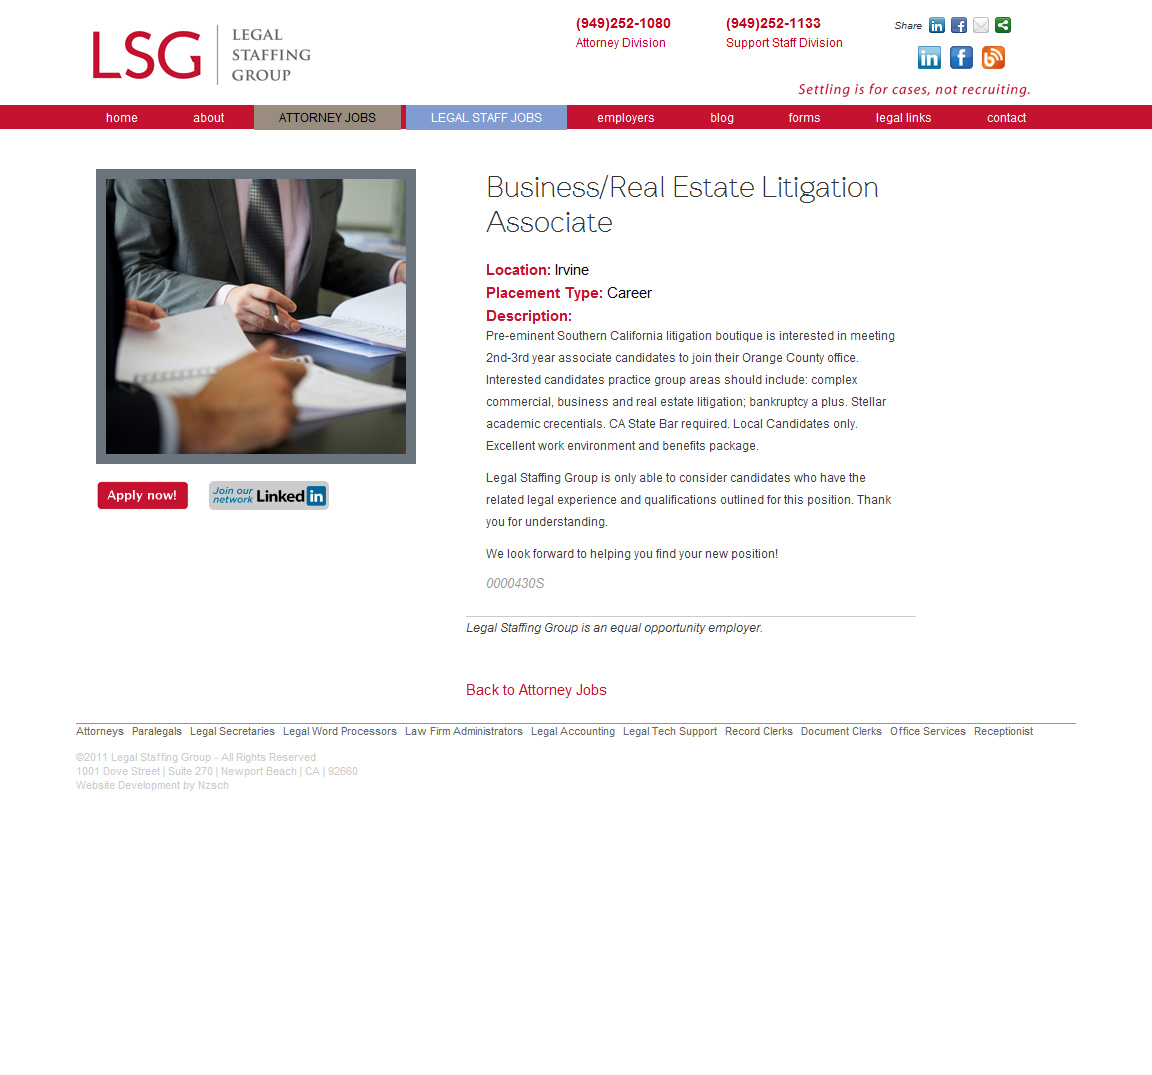 Legal Staffing Group: Database Integration